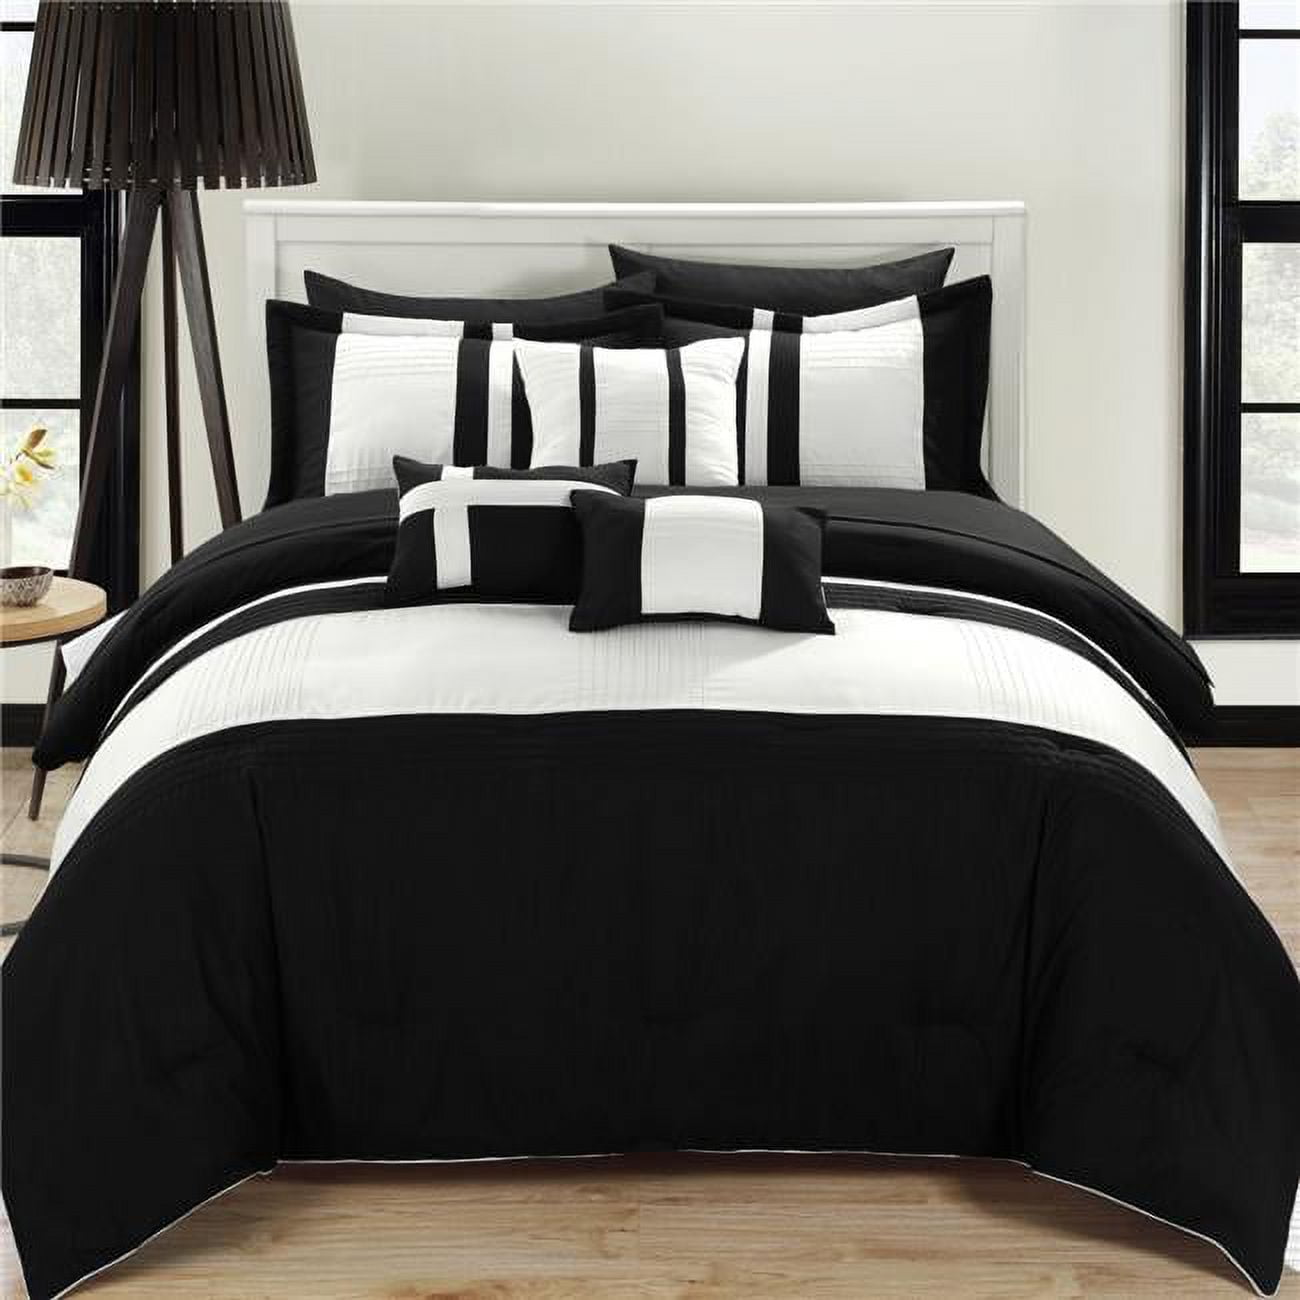 Cs0862-312-us Fiesta Bed In A Bag Comforter Set - Black - Queen - 10 Piece